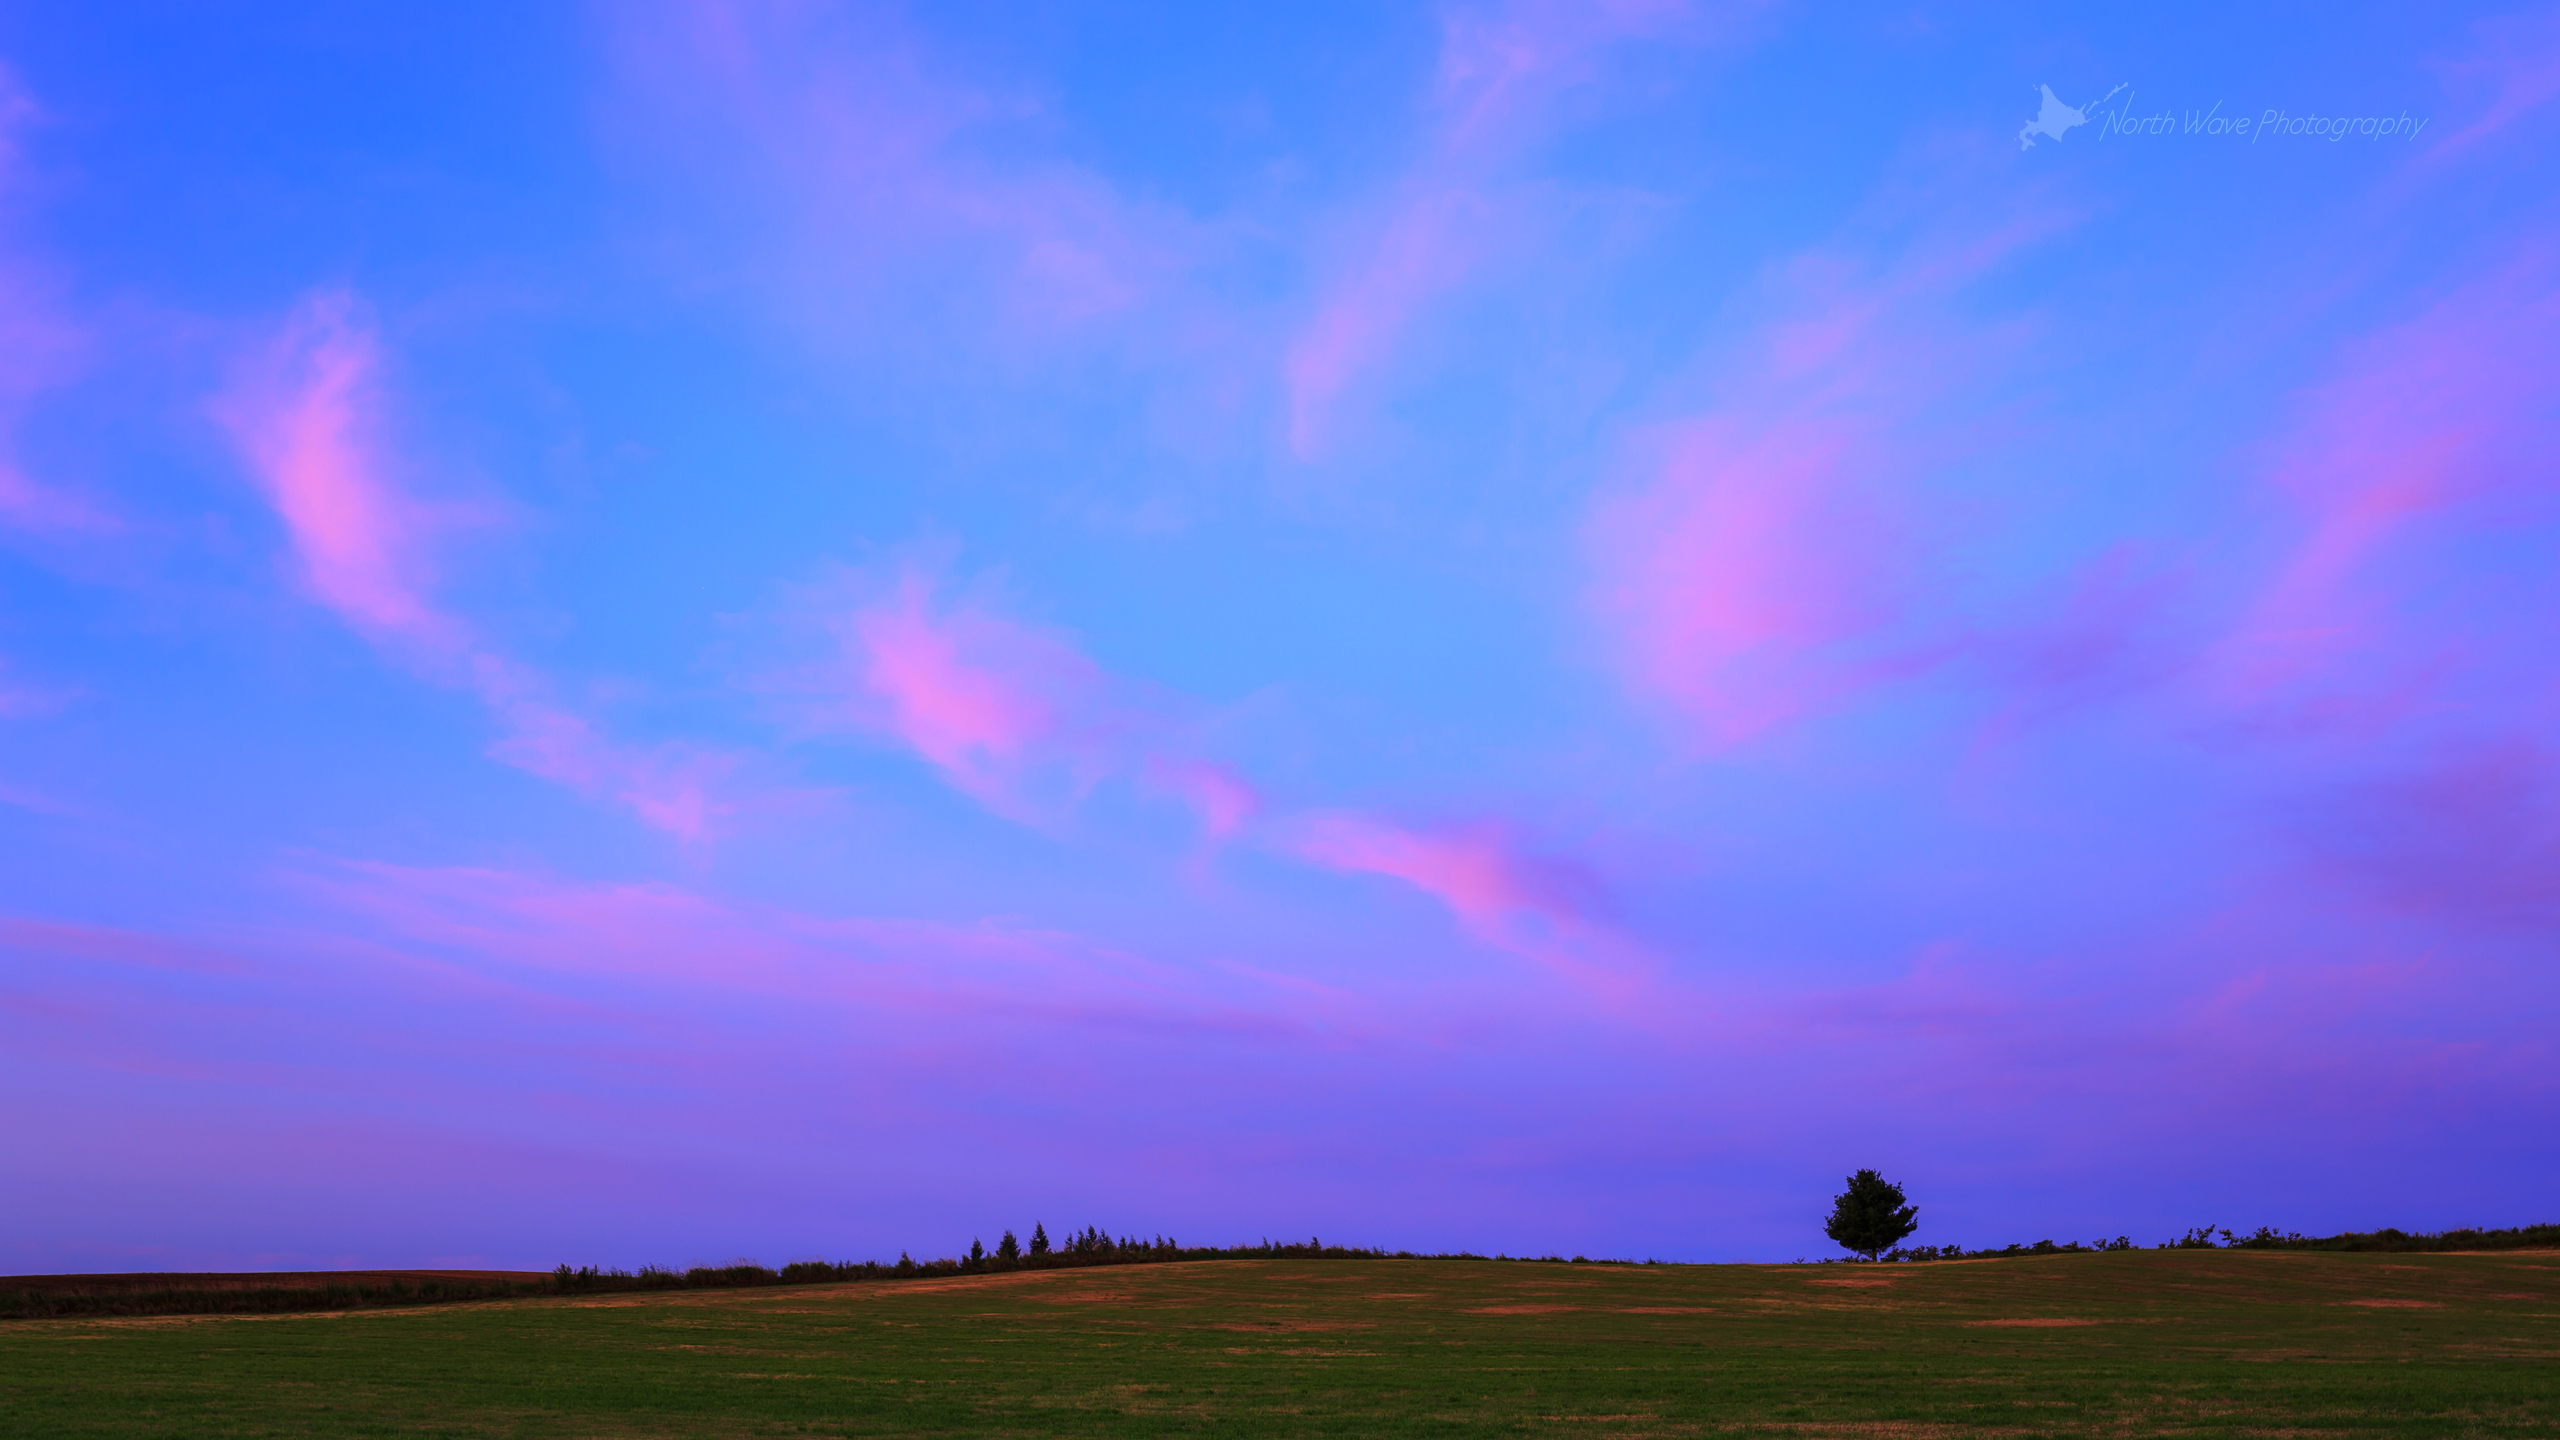 北海道の風景壁紙 ピンク色の朝焼けと一本木 No 31 North Wave Photography